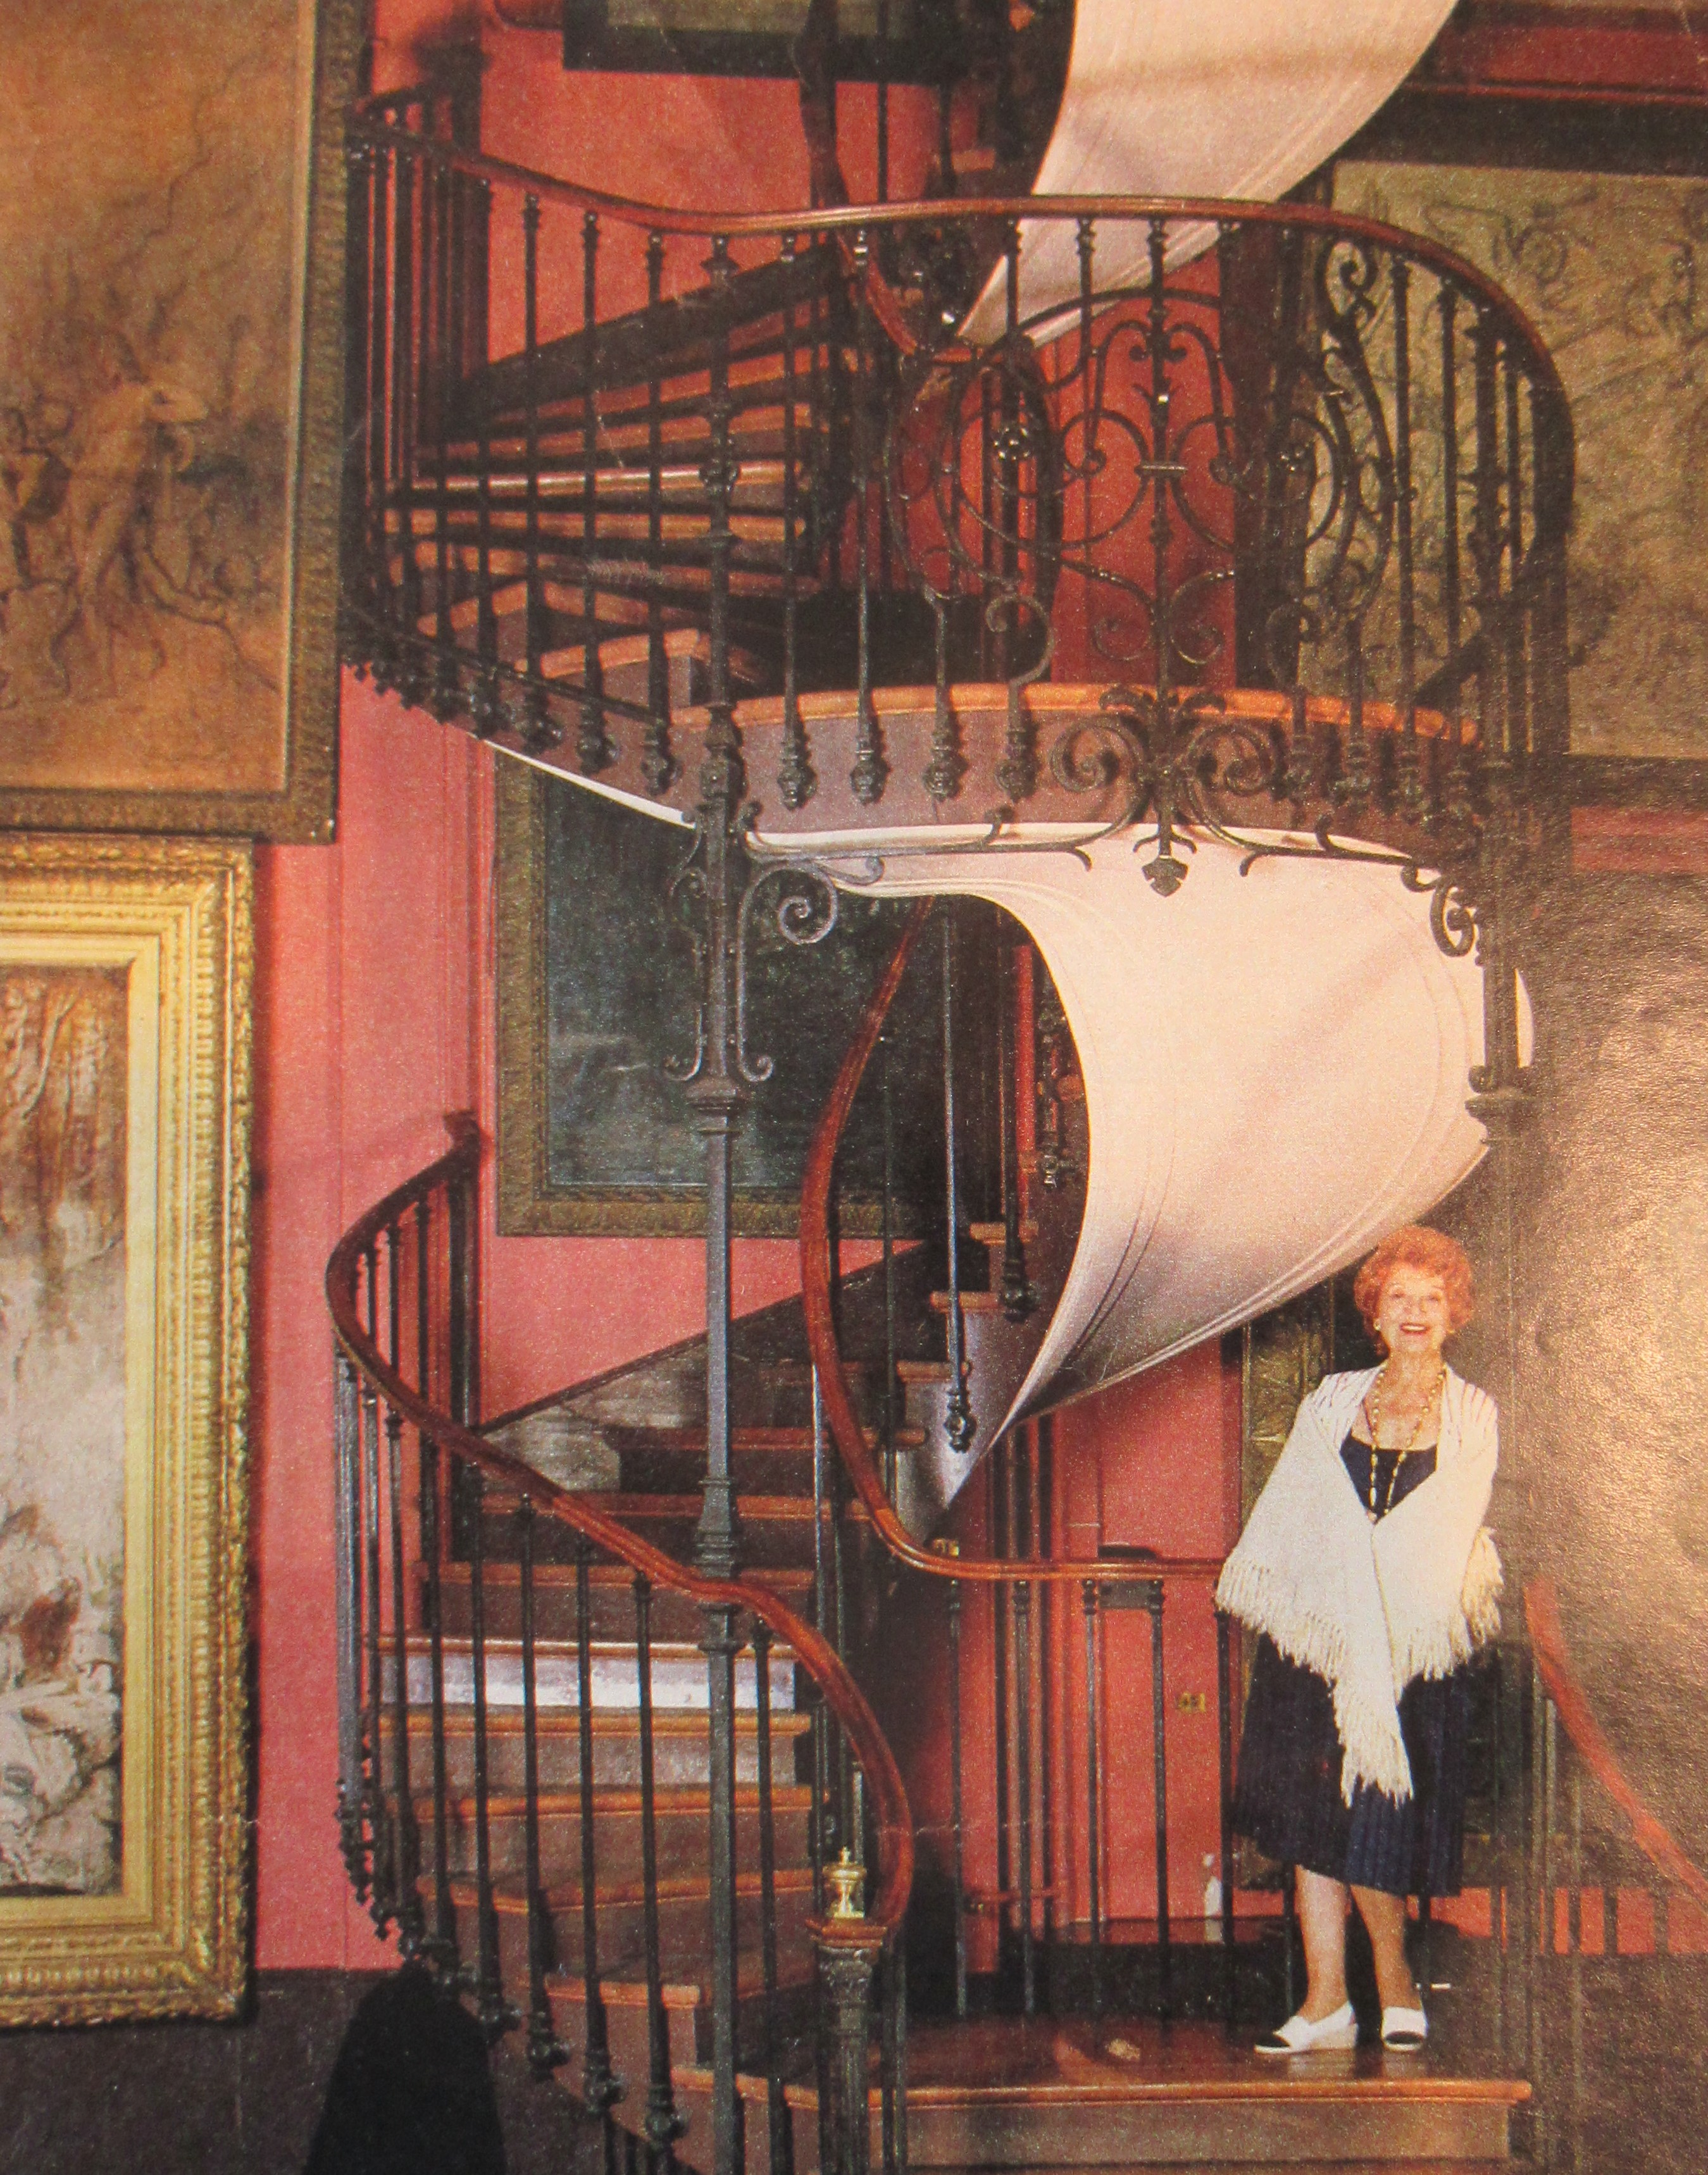 Photographie d'Edwige Feuillère dans l'escalier du musée